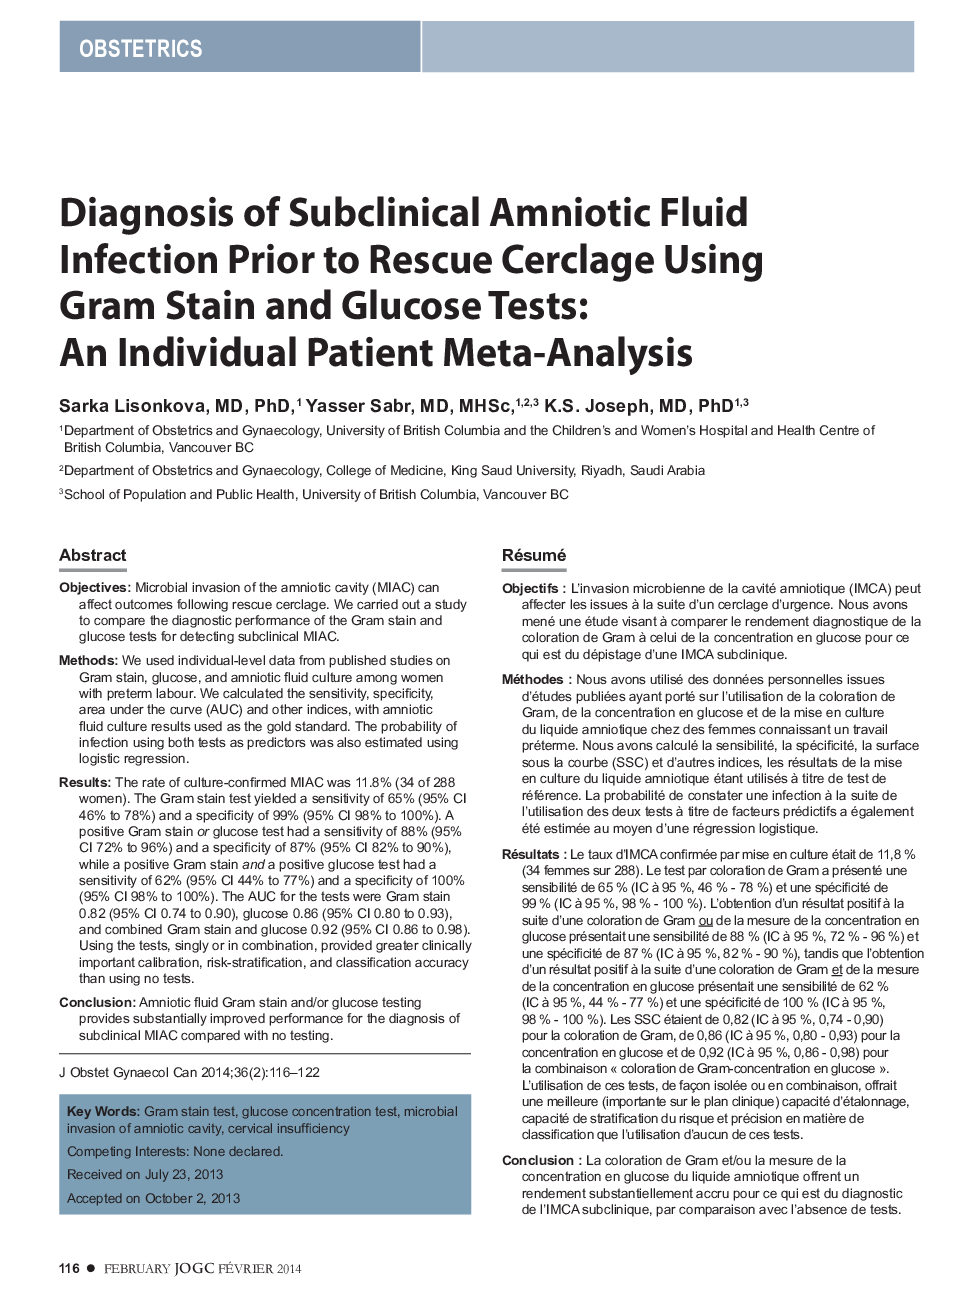 تشخیص عفونت مایع آمنیوتیک زیر کلینیکی قبل از نجات سارکلاژ با استفاده از آزمونهای پارامتر و گلوکز گام: یک متاآنالیز بیمار فرد 